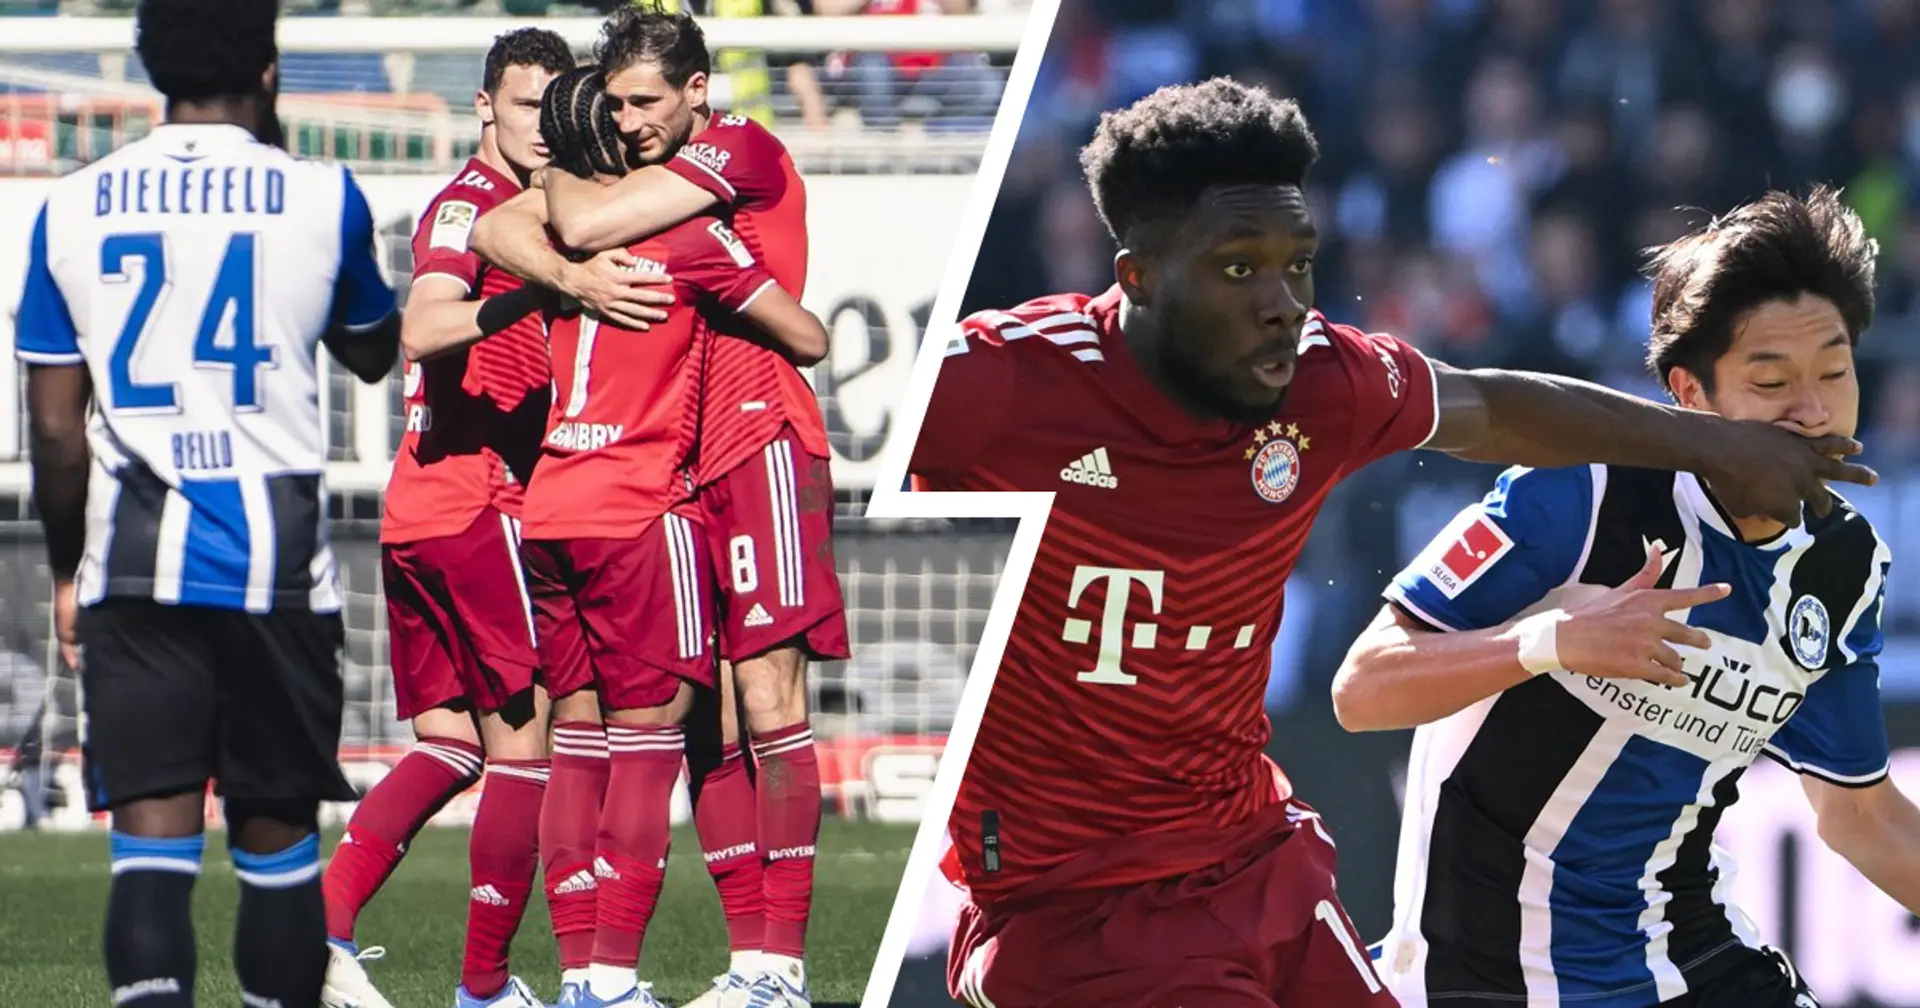 Nicht problemlos, aber verdienter Sieg: Bayerns 3:0-Sieg vs. Bielefeld in 3 Kernpunkten zum Besprechen